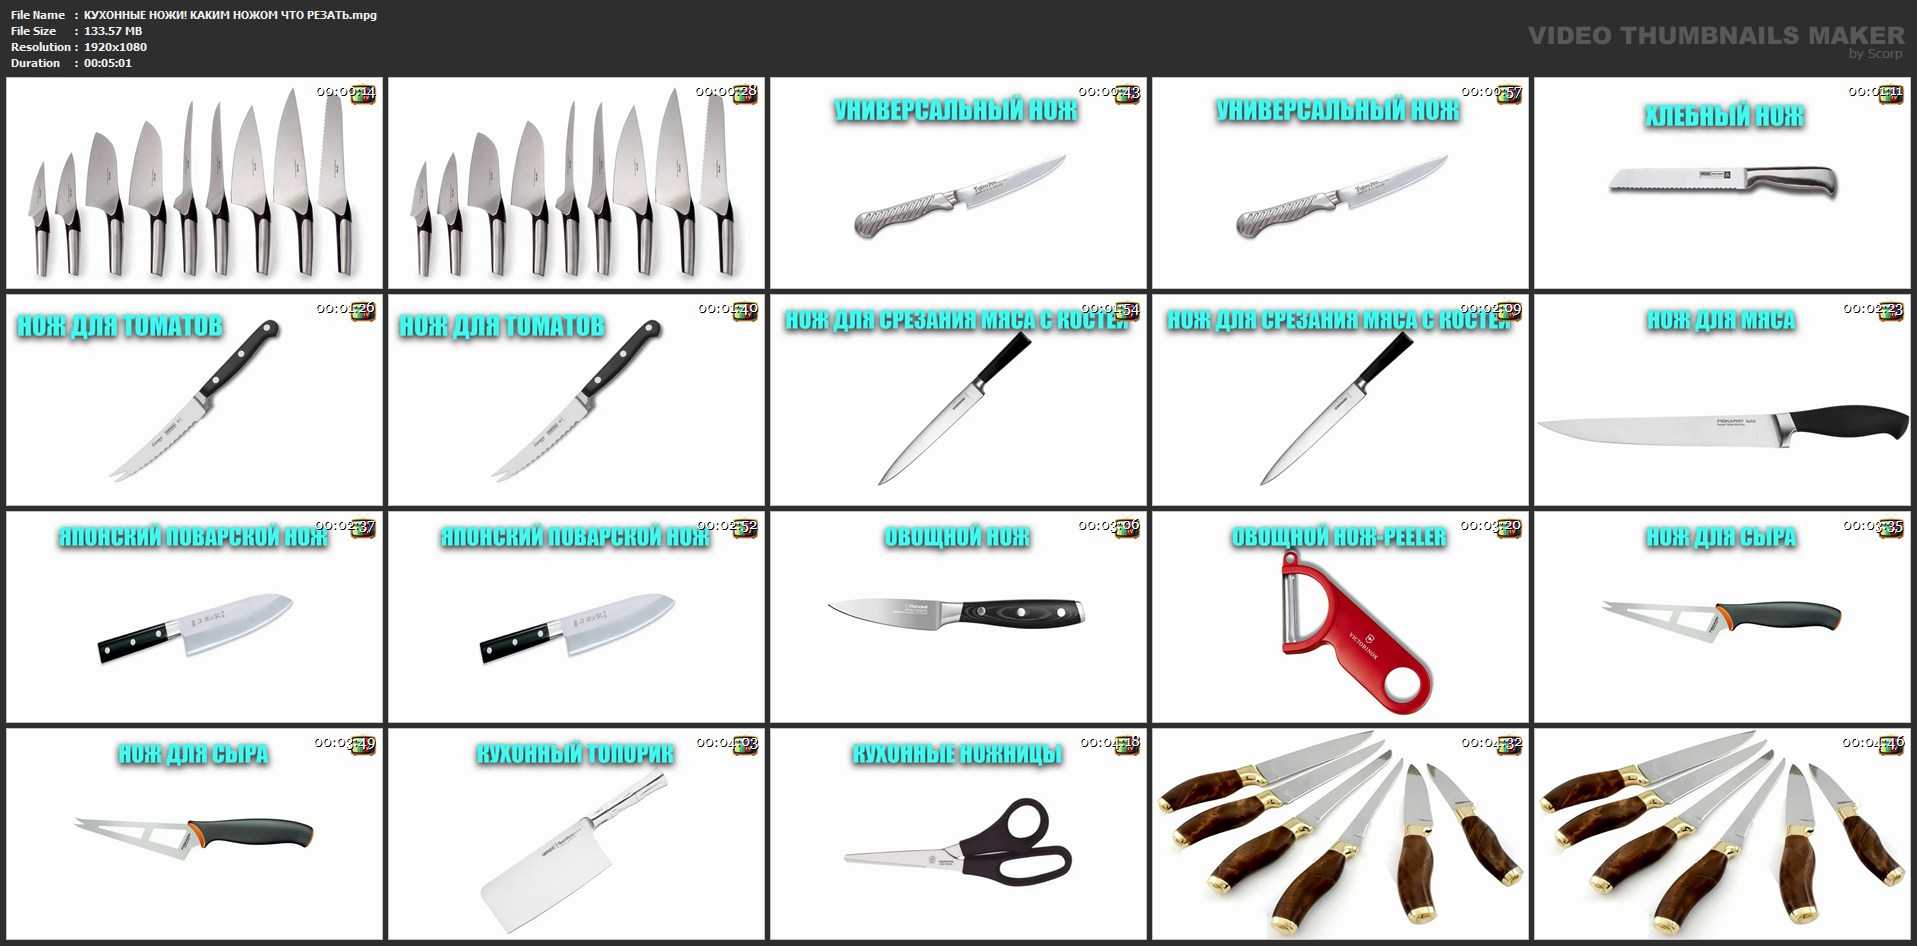 Виды кухонных ножей и их назначение: фото, пояснение что ими можно резать